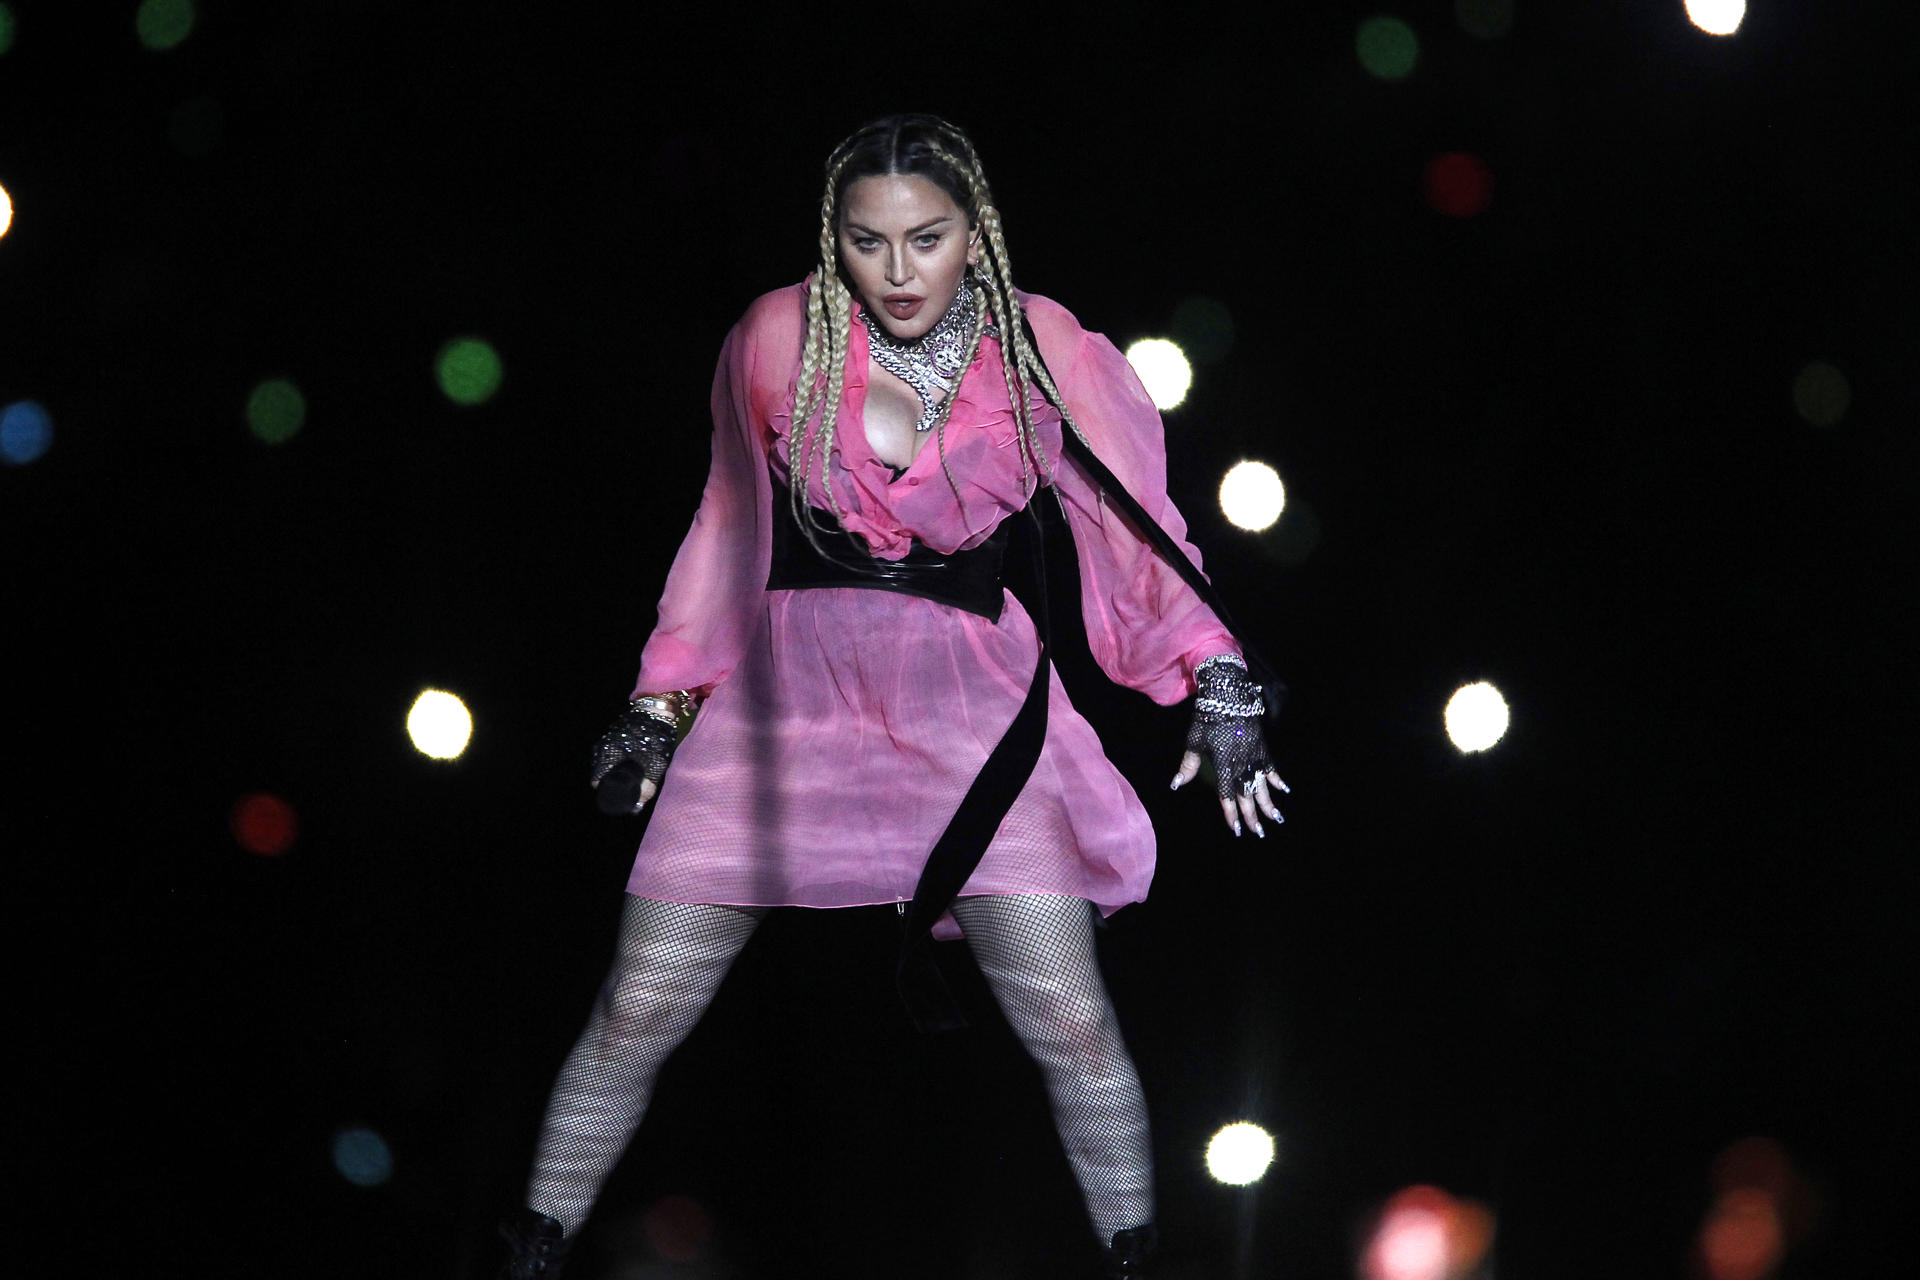 Fotografía de archivo fechada el 30 de abril de 2022 que muestra a la cantante estadounidense Madonna mientras se presenta durante el concierto "Medallo en el mapa" de Maluma, en Medellín (Colombia). EFE/Luis Eduardo Noriega
